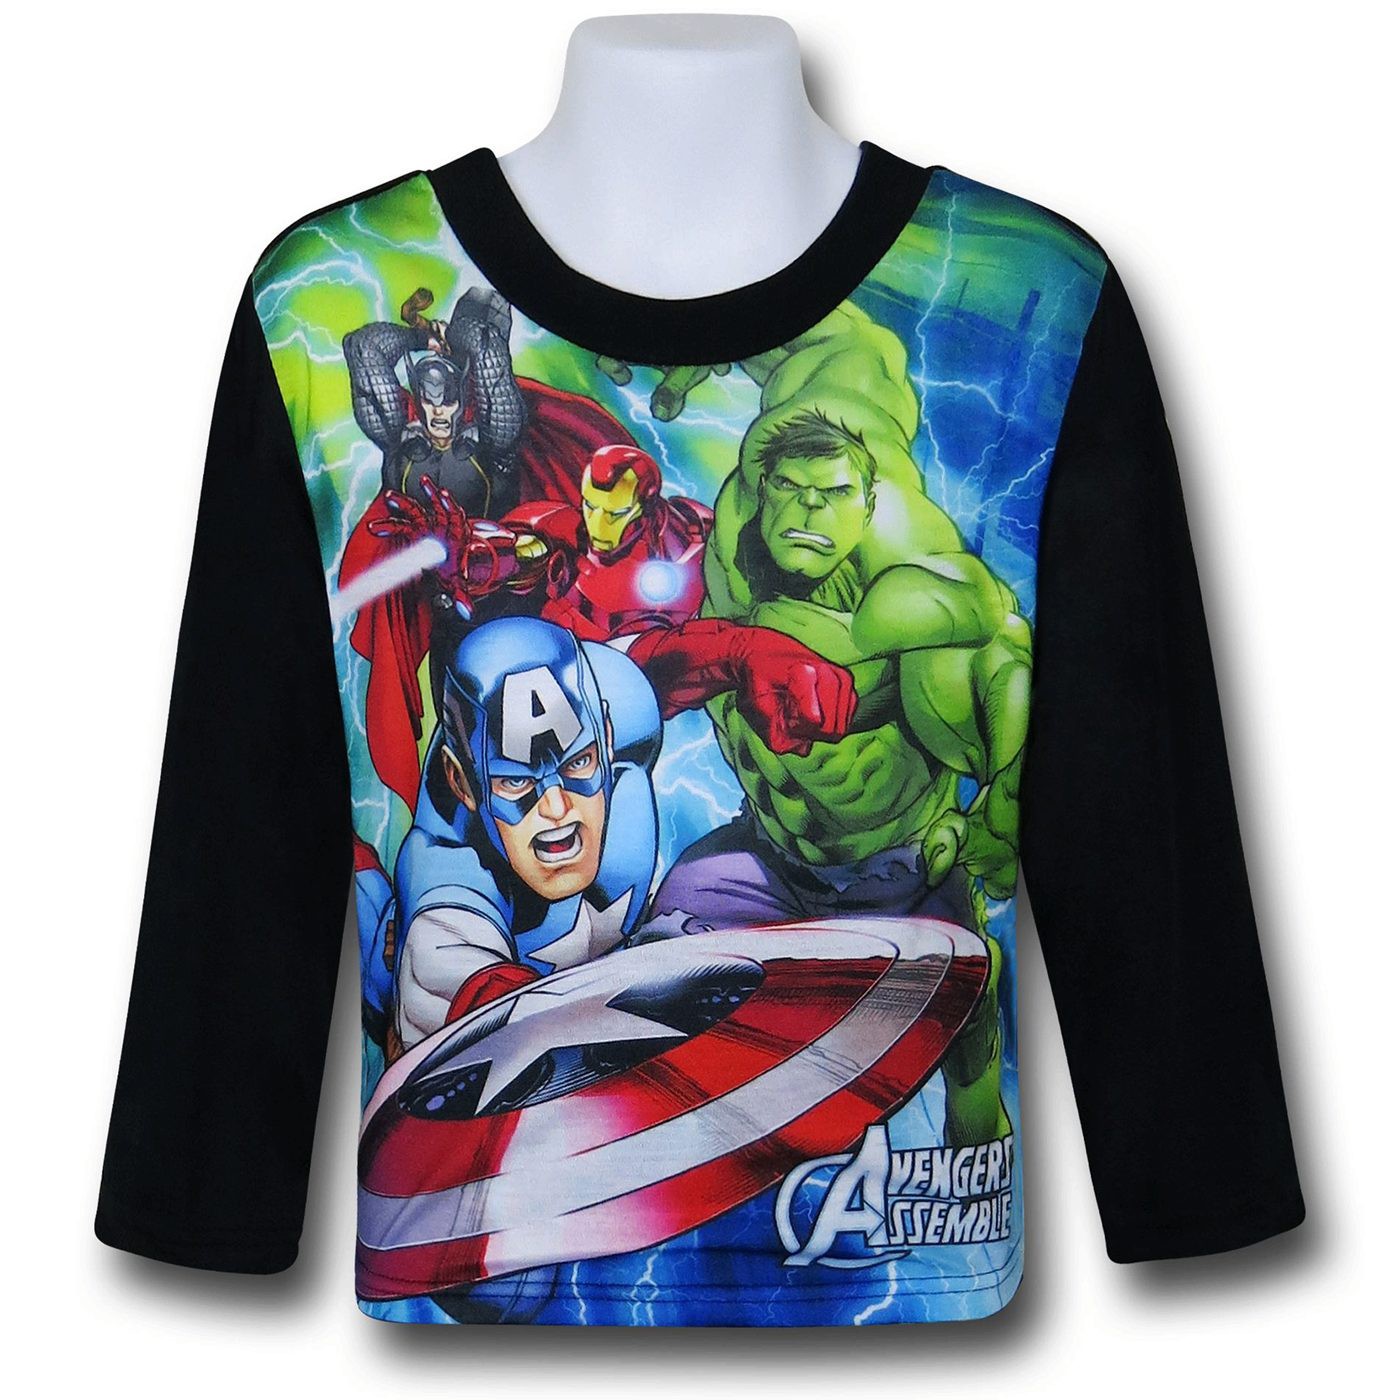 Avengers Shield Throw 2-Piece Kids Pajama Set